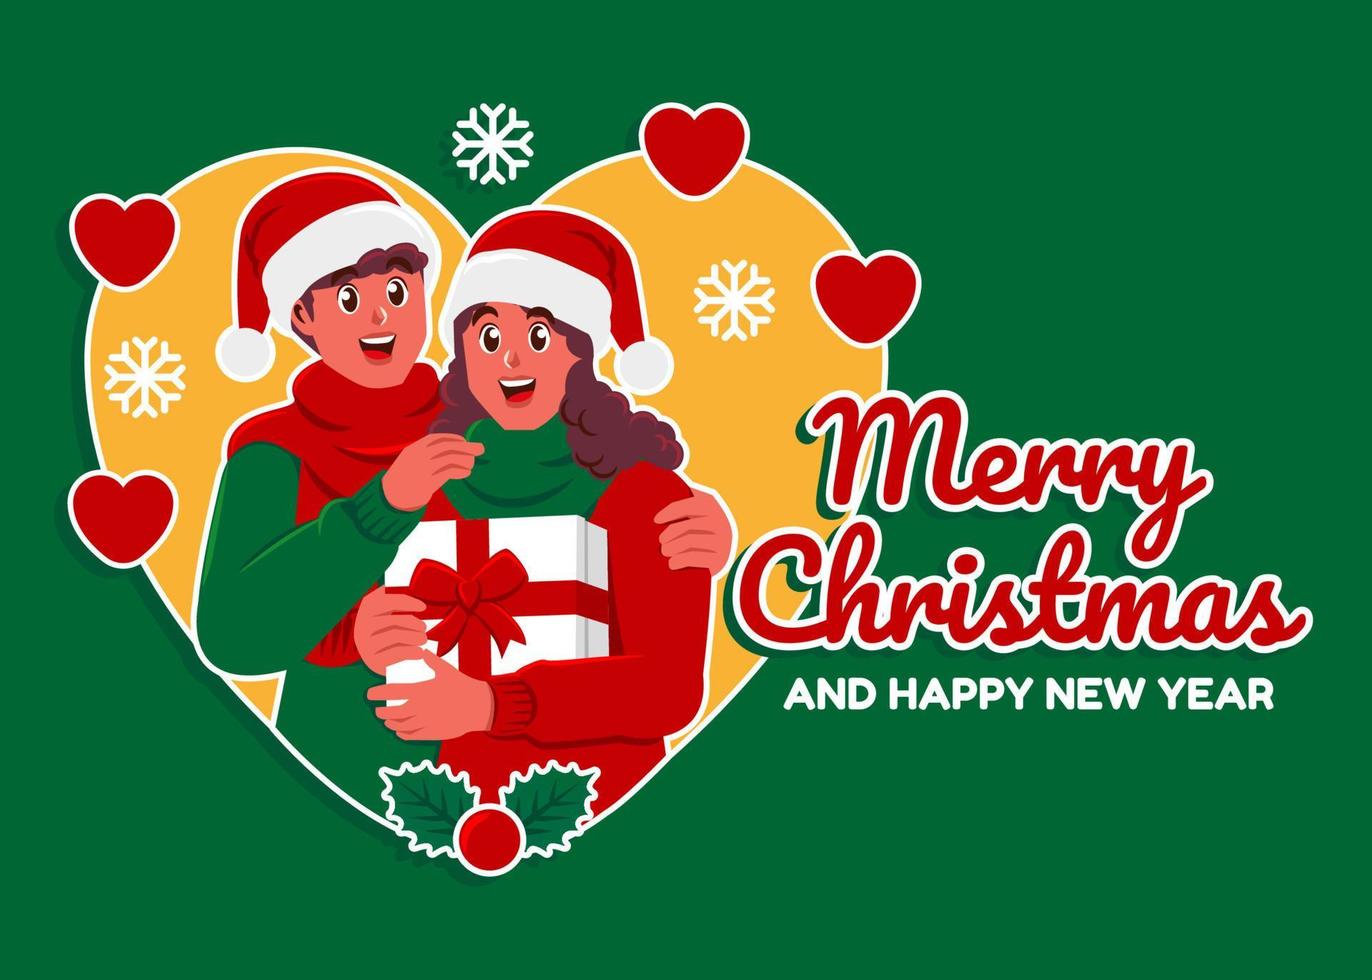 coppia festeggiare Natale, allegro Natale e contento nuovo anno saluto carte vettore